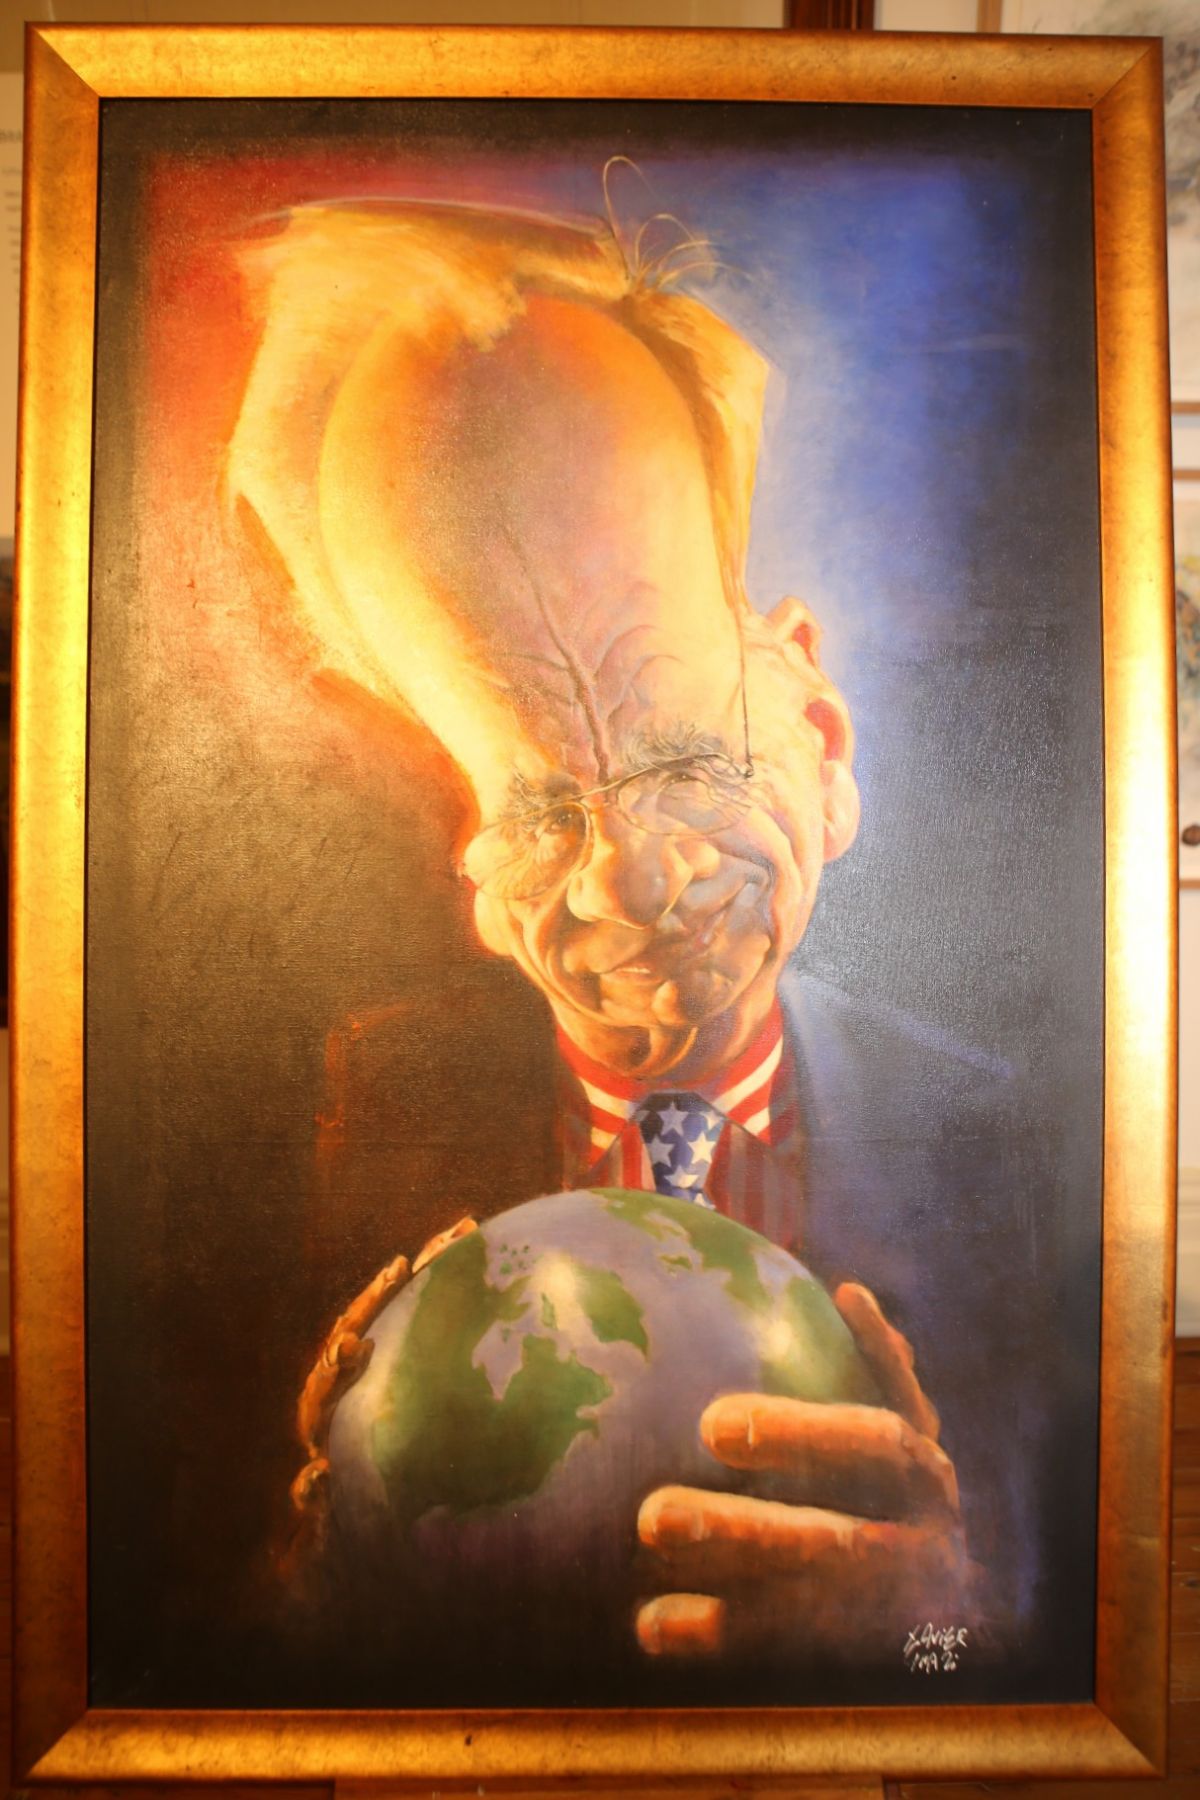 Portrait of Rupert Murdoch